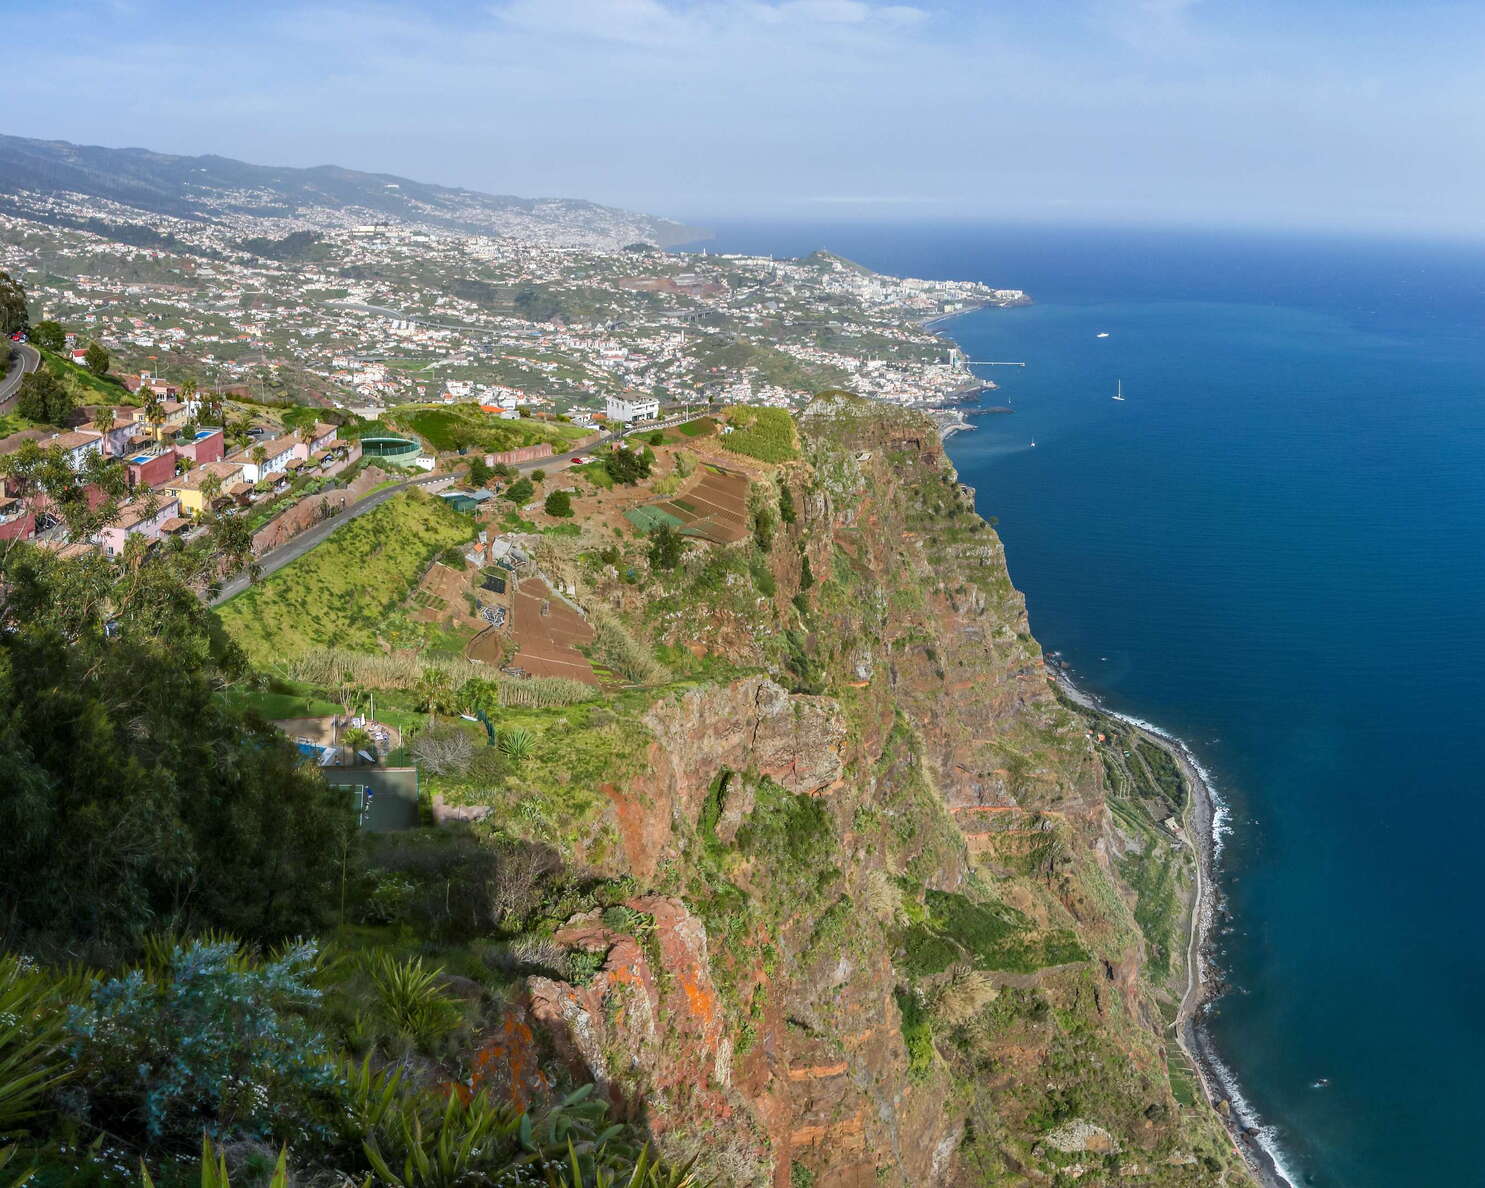 Cabo Girão and suburbs of Funchal